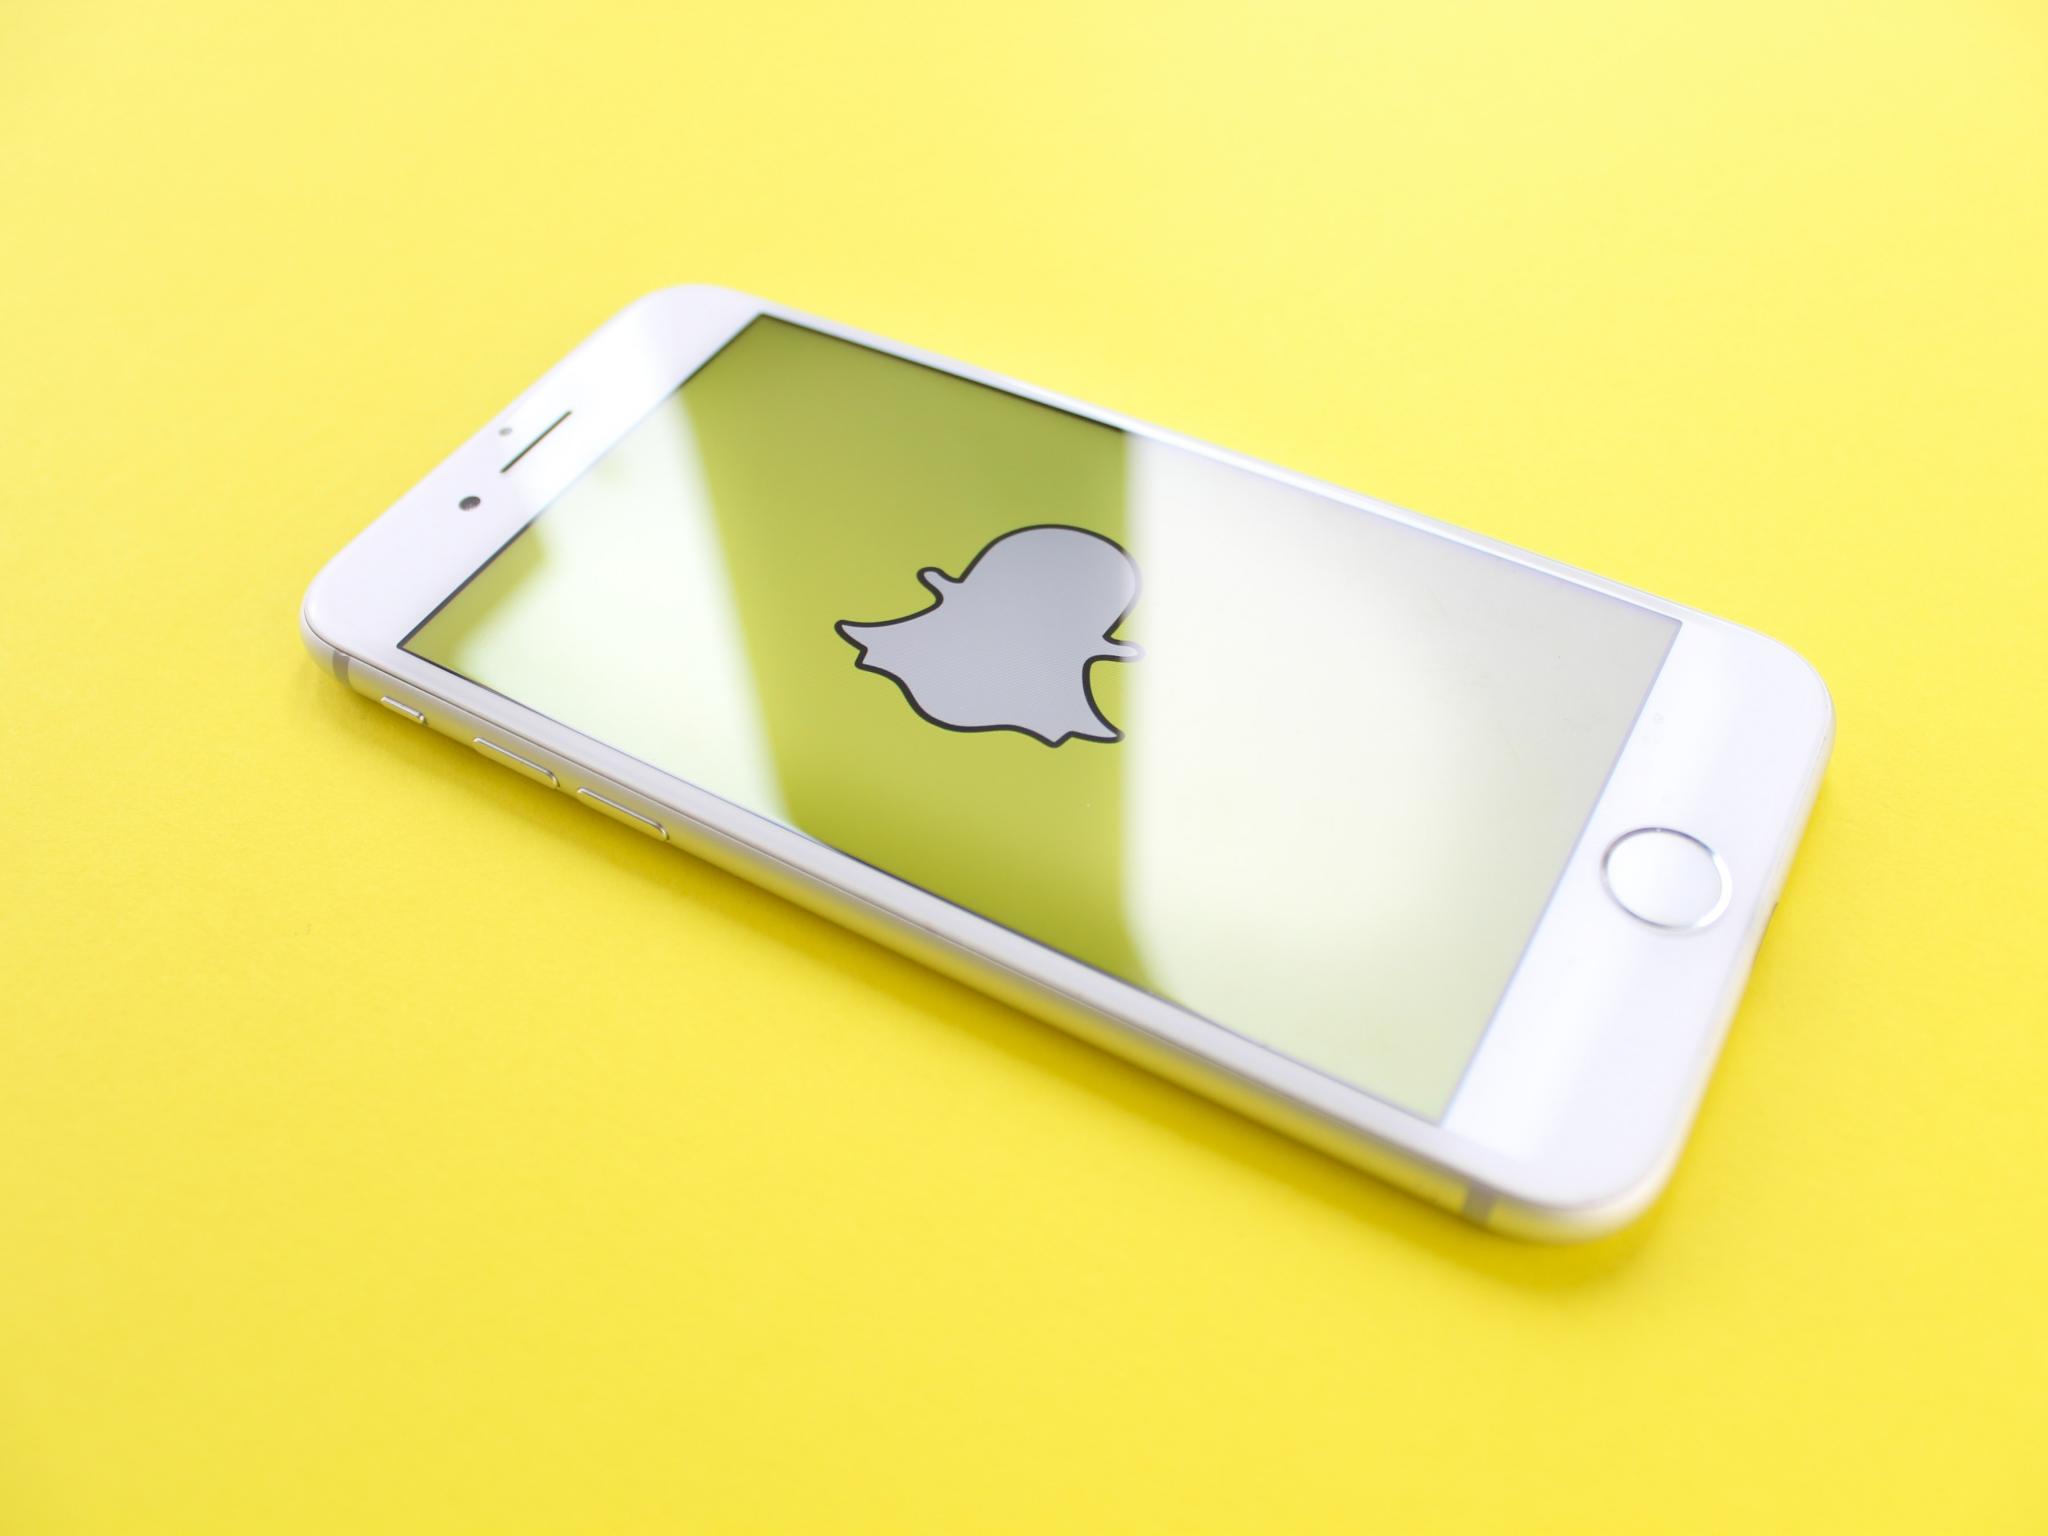 Le service payant de Snapchat prospère avec 5 millions d'utilisateurs, ce qui augmente les revenus de Snap - Goliaths actualités boursière